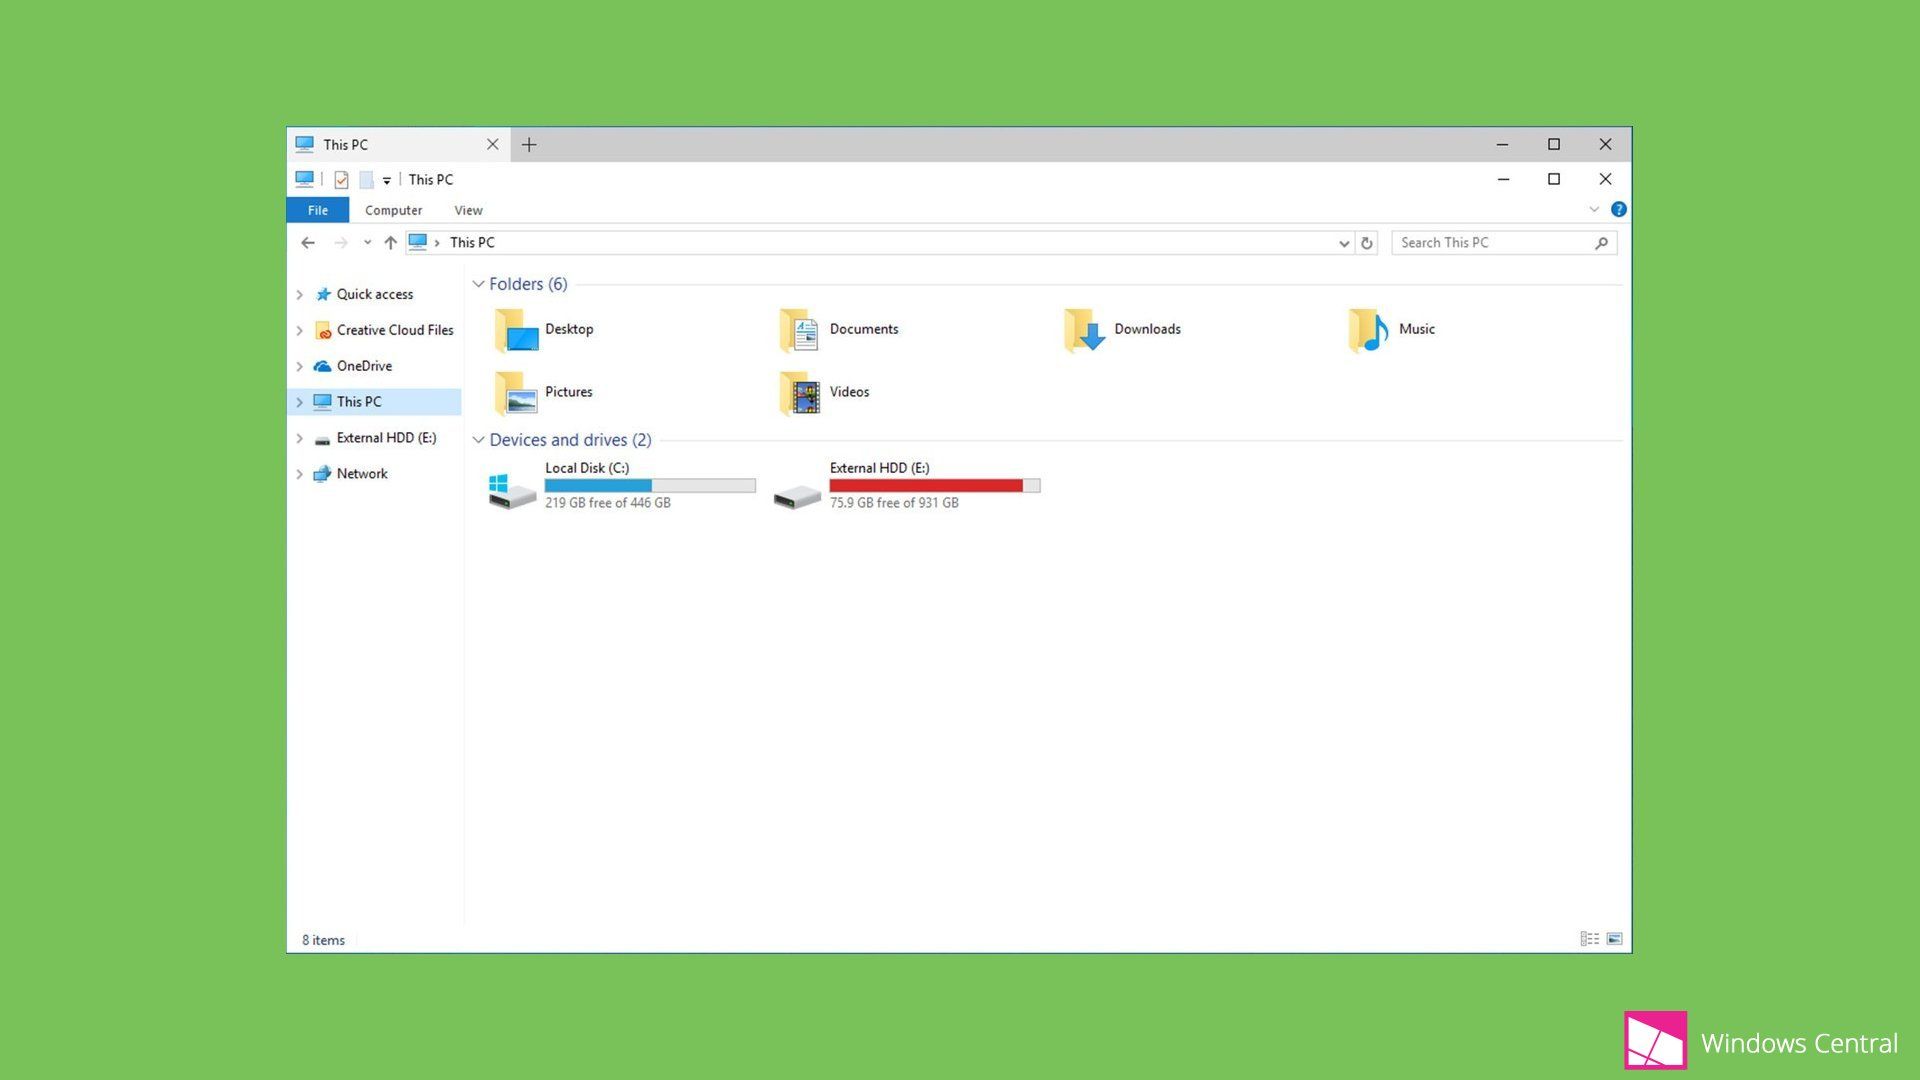 Windows 10 - Tabbed Shell For File Explorer